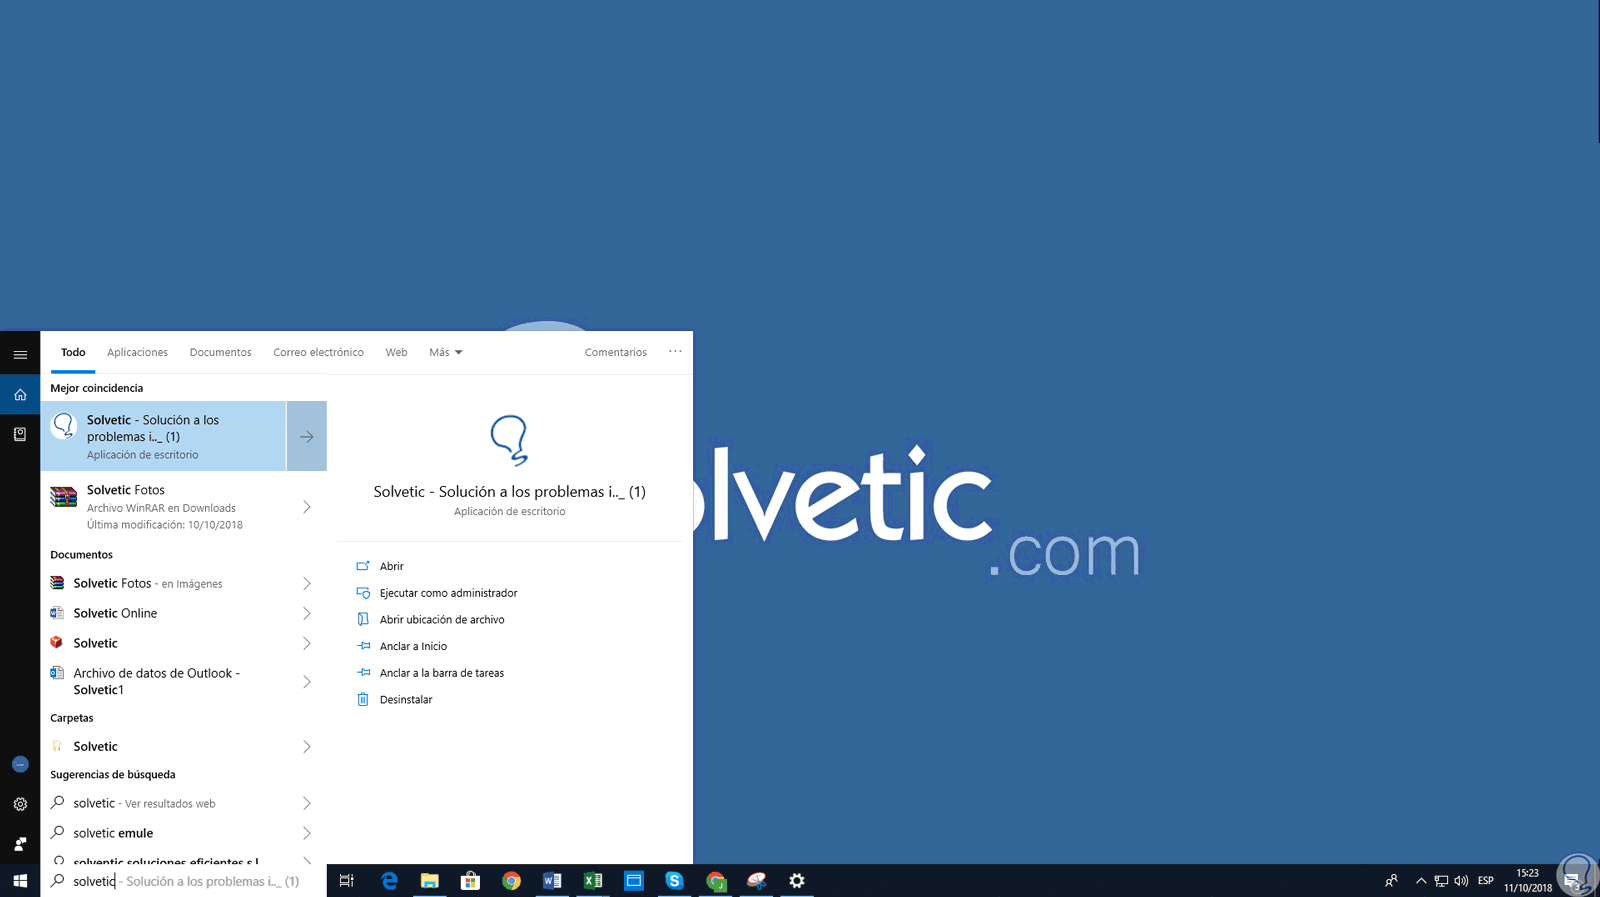 flojo como el desayuno deshonesto Cómo buscar archivos, música, fotos, app y programas en Windows 10 -  Solvetic